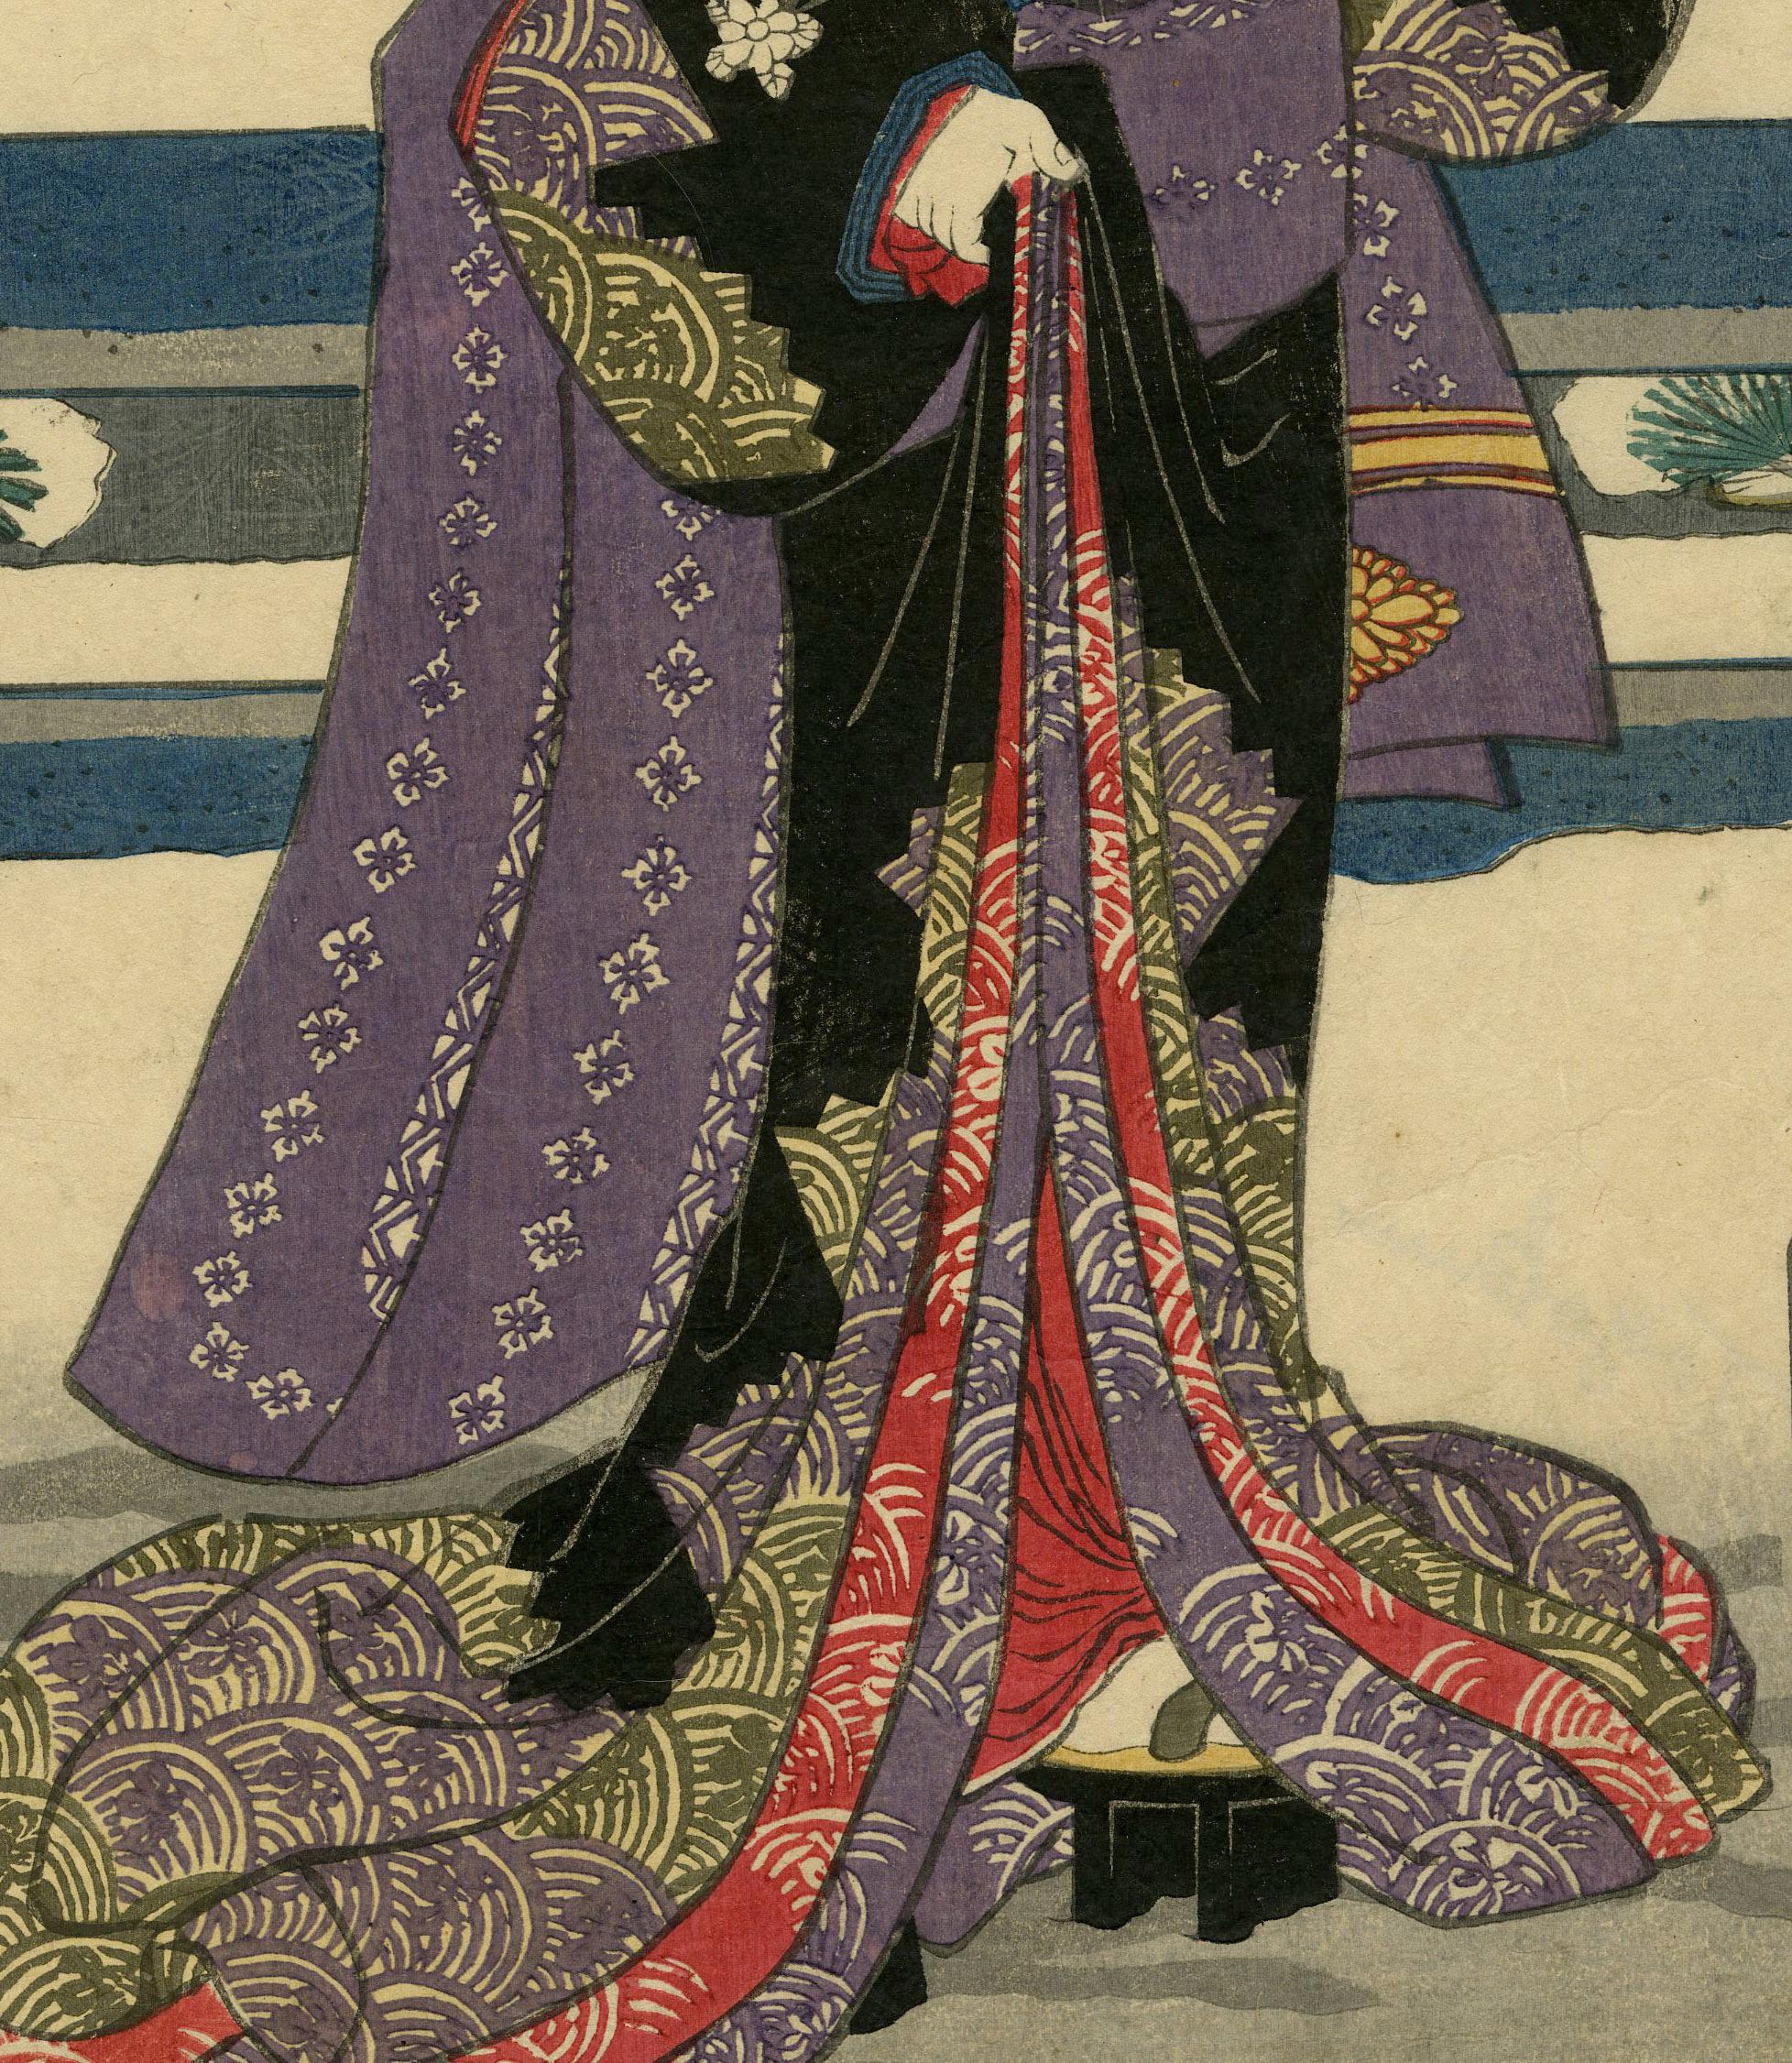 Courtisane Kumekichi
Gravure sur bois en couleur, 1858
L'acteur de Kabuki Iwai Kumesaburo III dans le rôle de la courtisane Kumekichi, qui, debout dans la neige, tient une coupe de saké rouge.
Éditeur : Ohkuniya Kinjiro
Signé : Toyokuni ga dans le